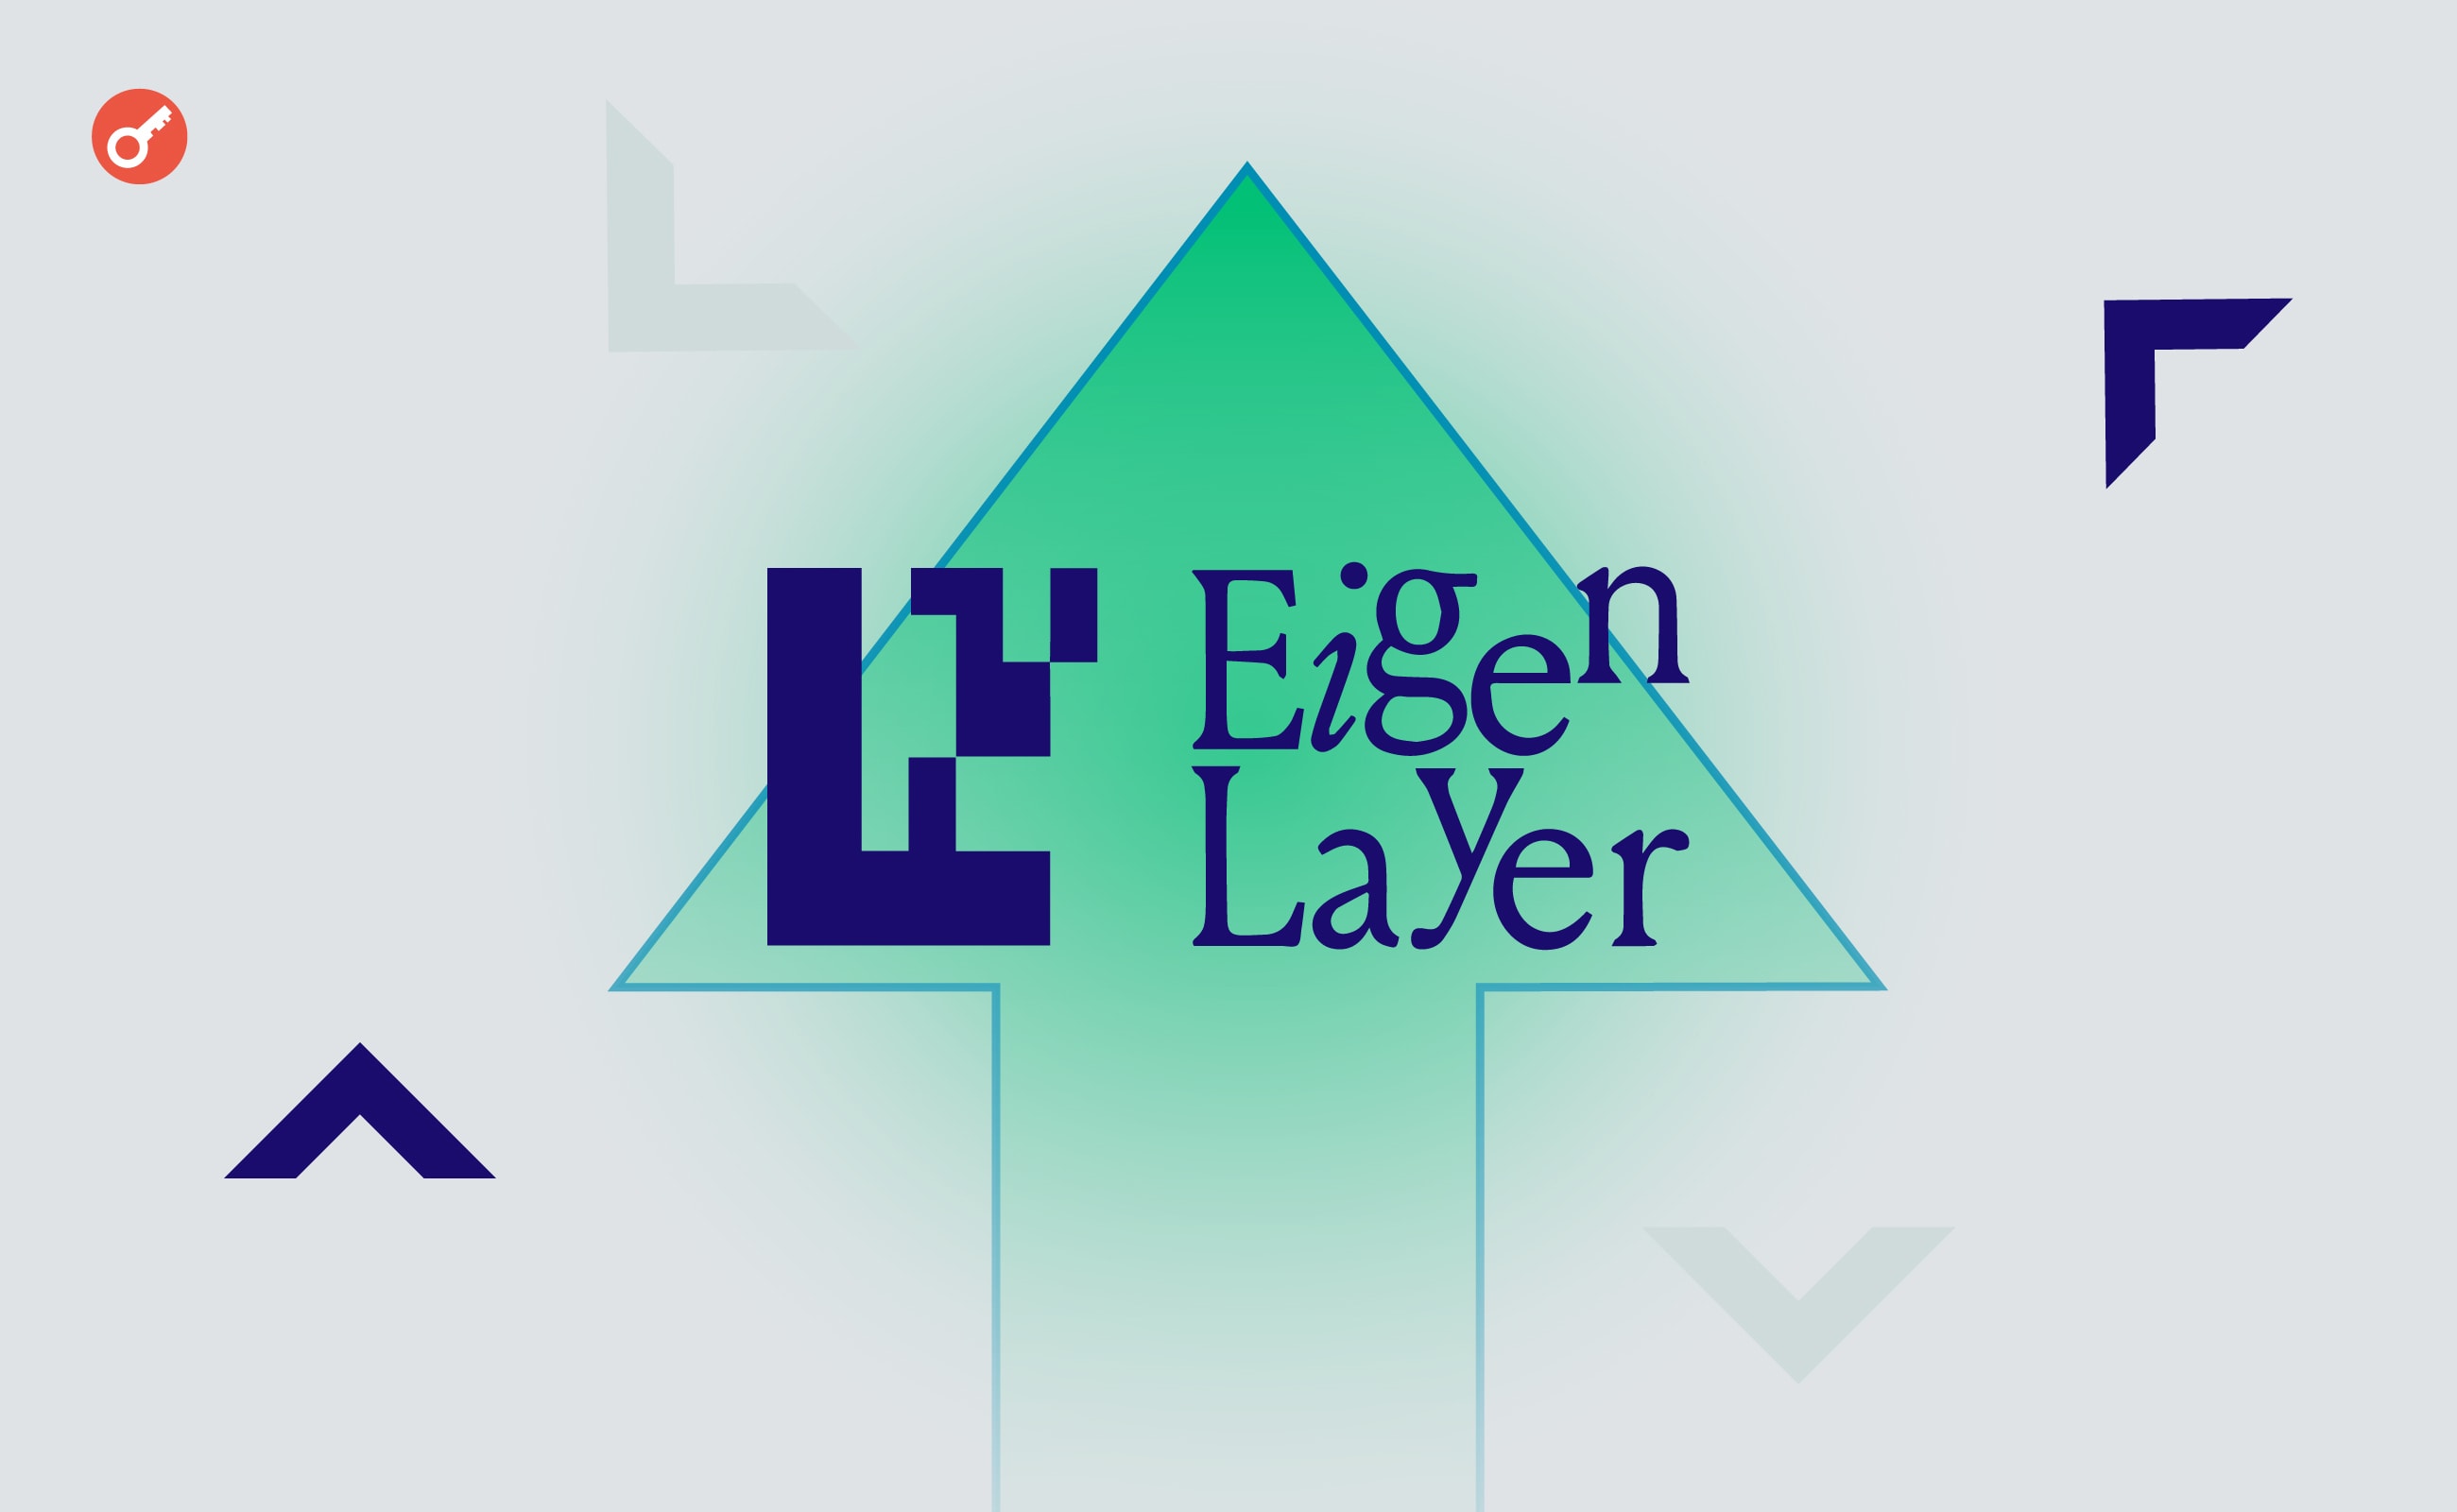 Розробника Ethereum розкритикували через дорогі консультації для EigenLayer. Головний колаж новини.